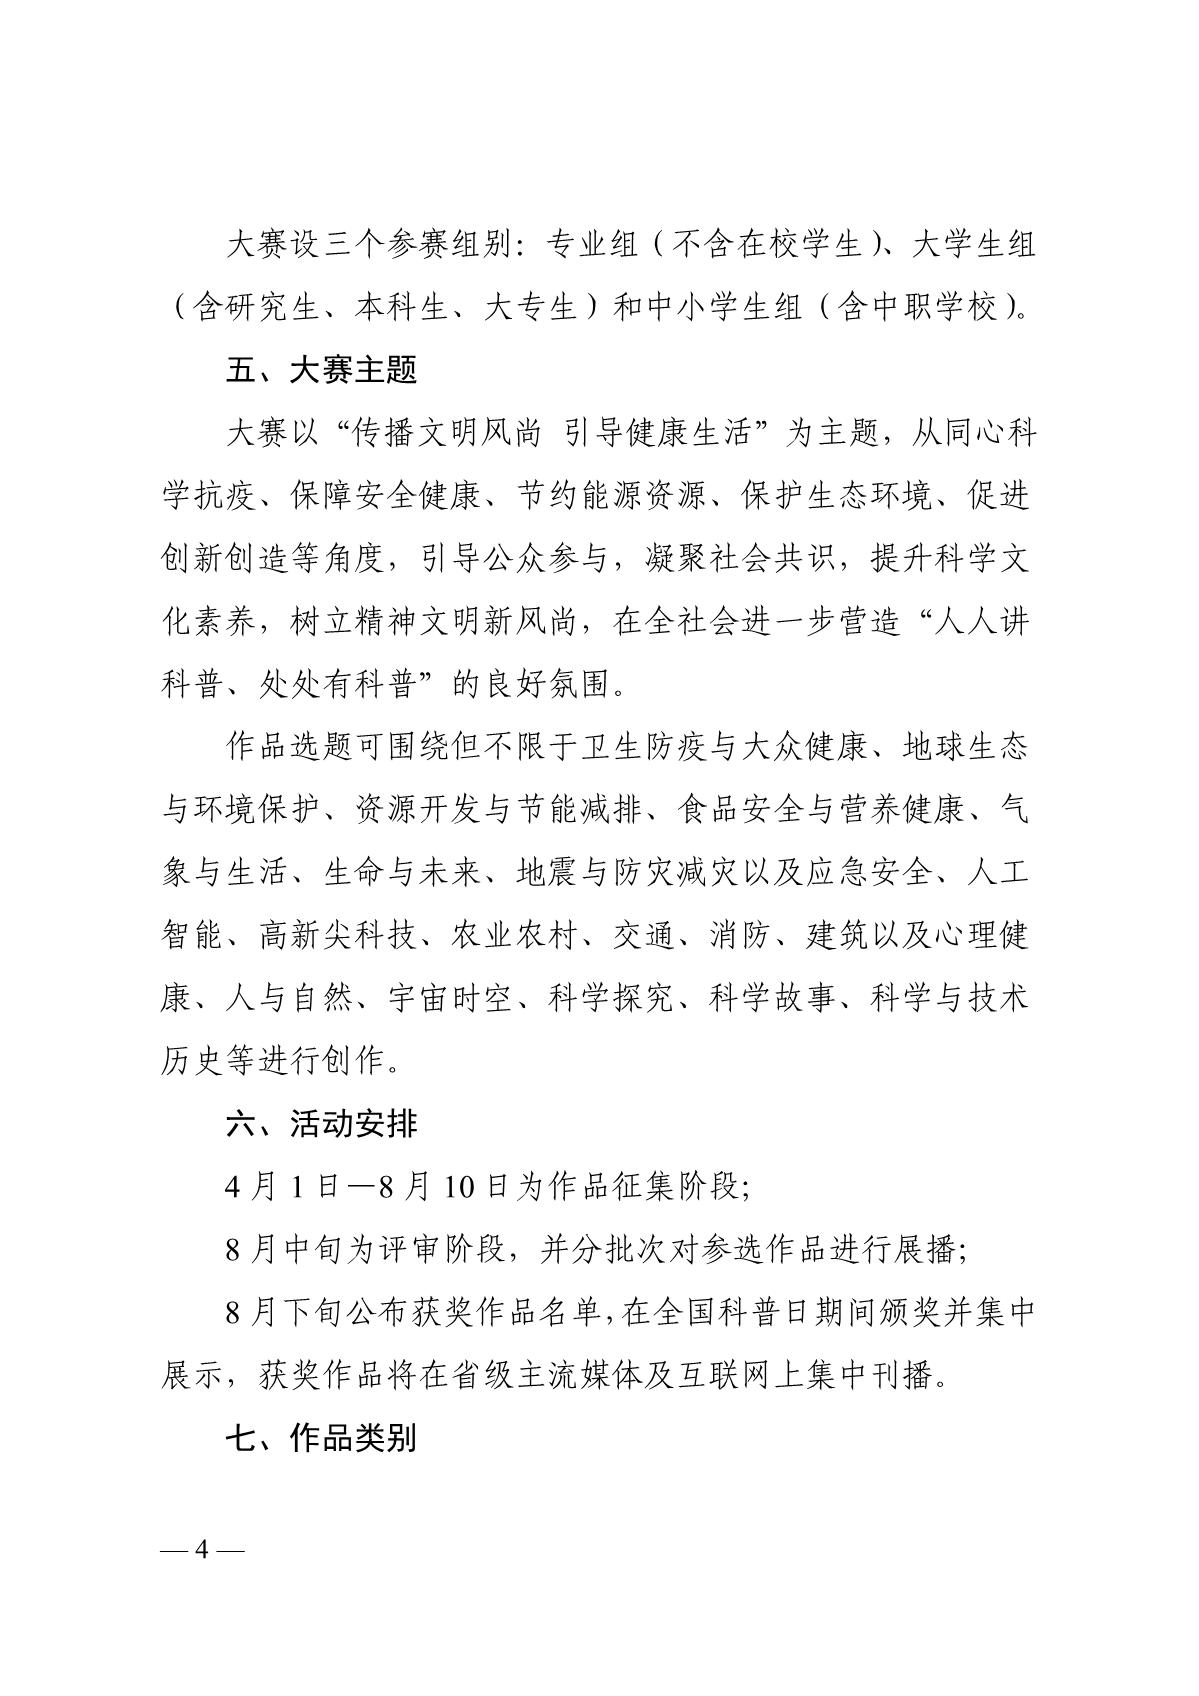 关于组织开展第六届江苏省科普公益作品大赛的通知（苏科协发〔2020〕46号）(1)_4.JPG